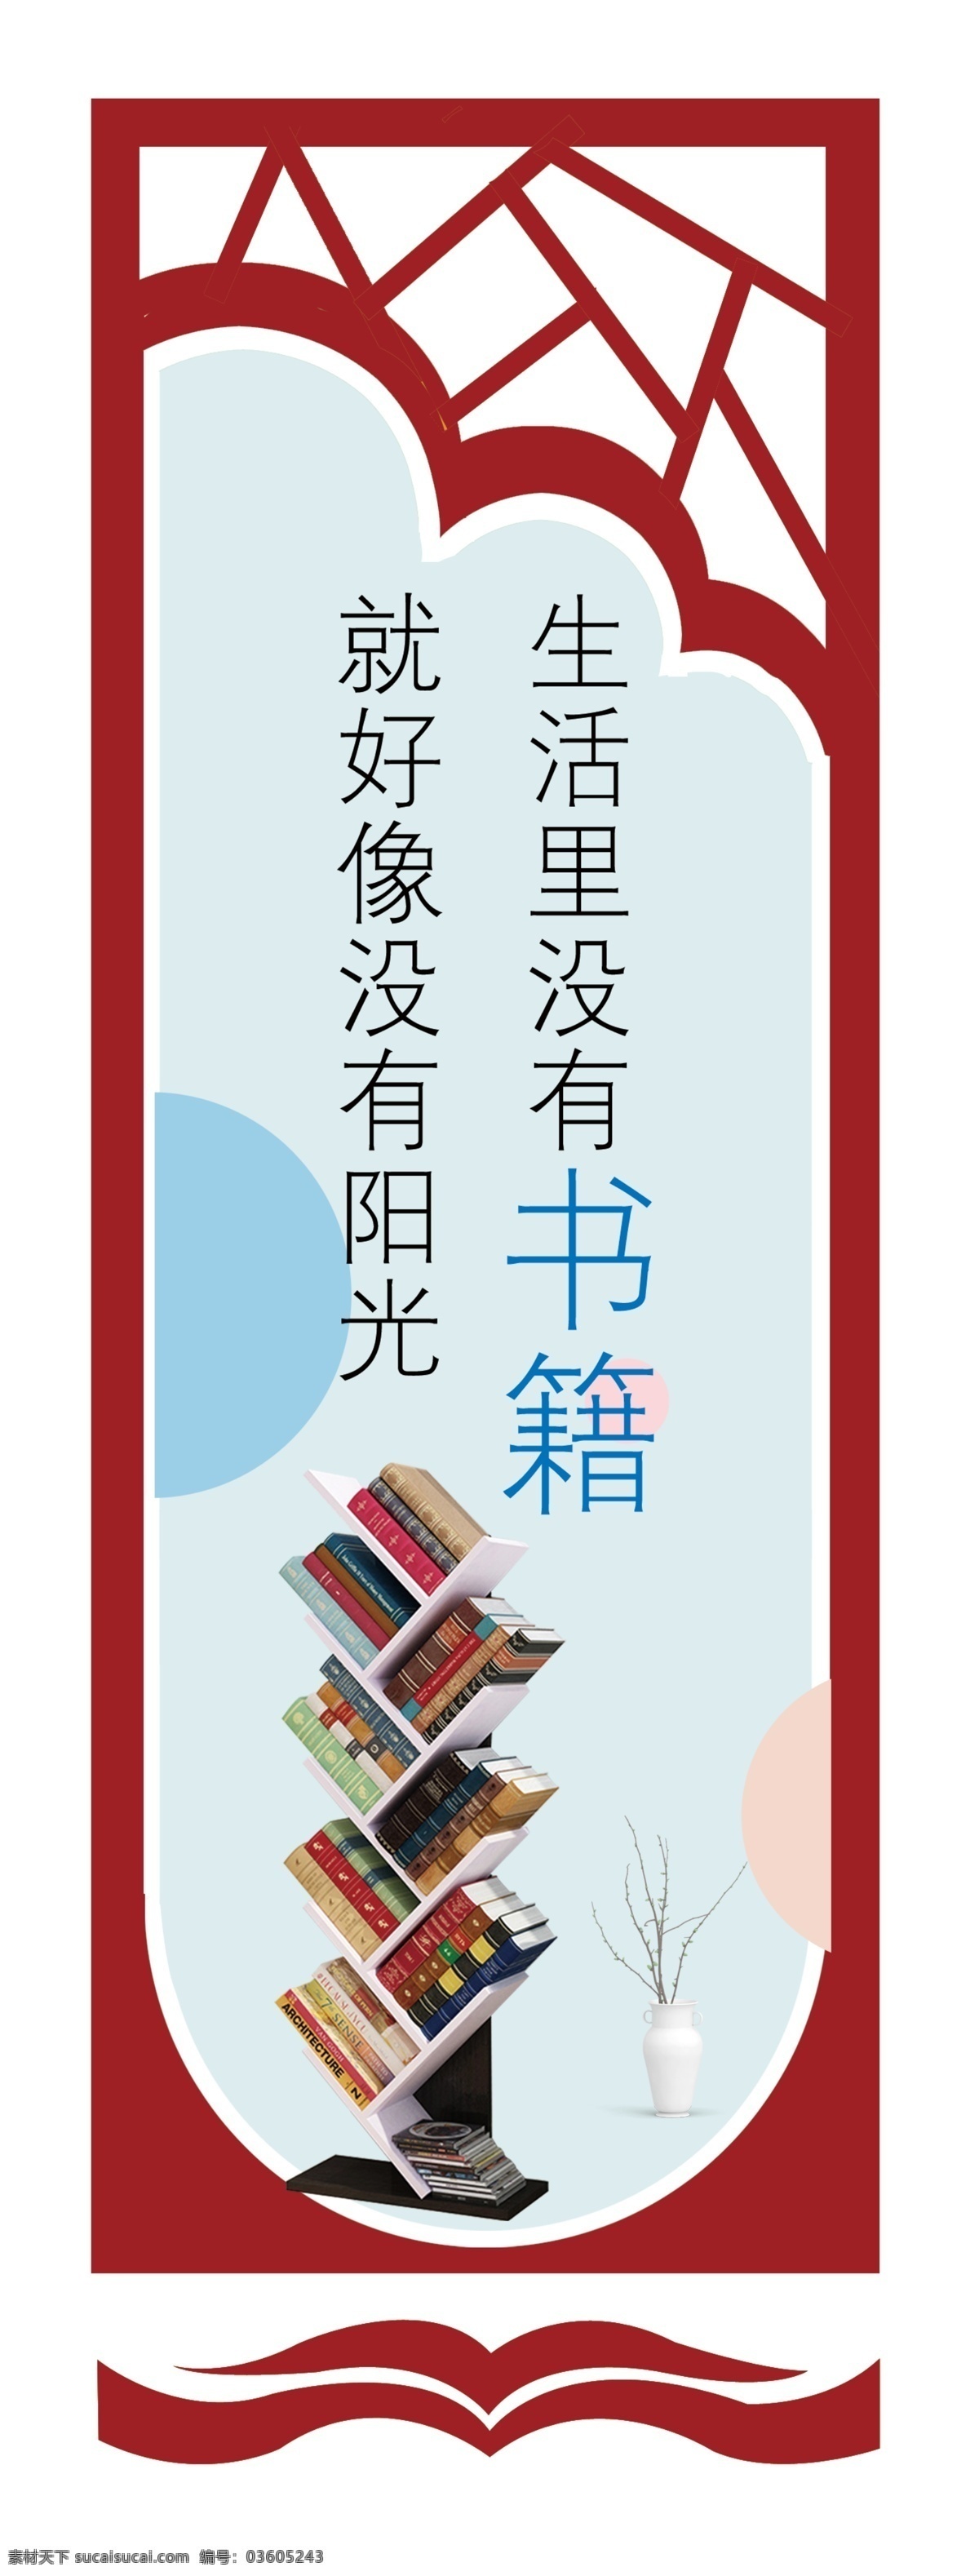 阅览室 标语 阅览室标语 图书室 文化 校园文化 校园标语 图书标语 学生阅览室 励志标语 励志 雕刻 立体标语 雕刻文化 中国风 图书 室内广告设计